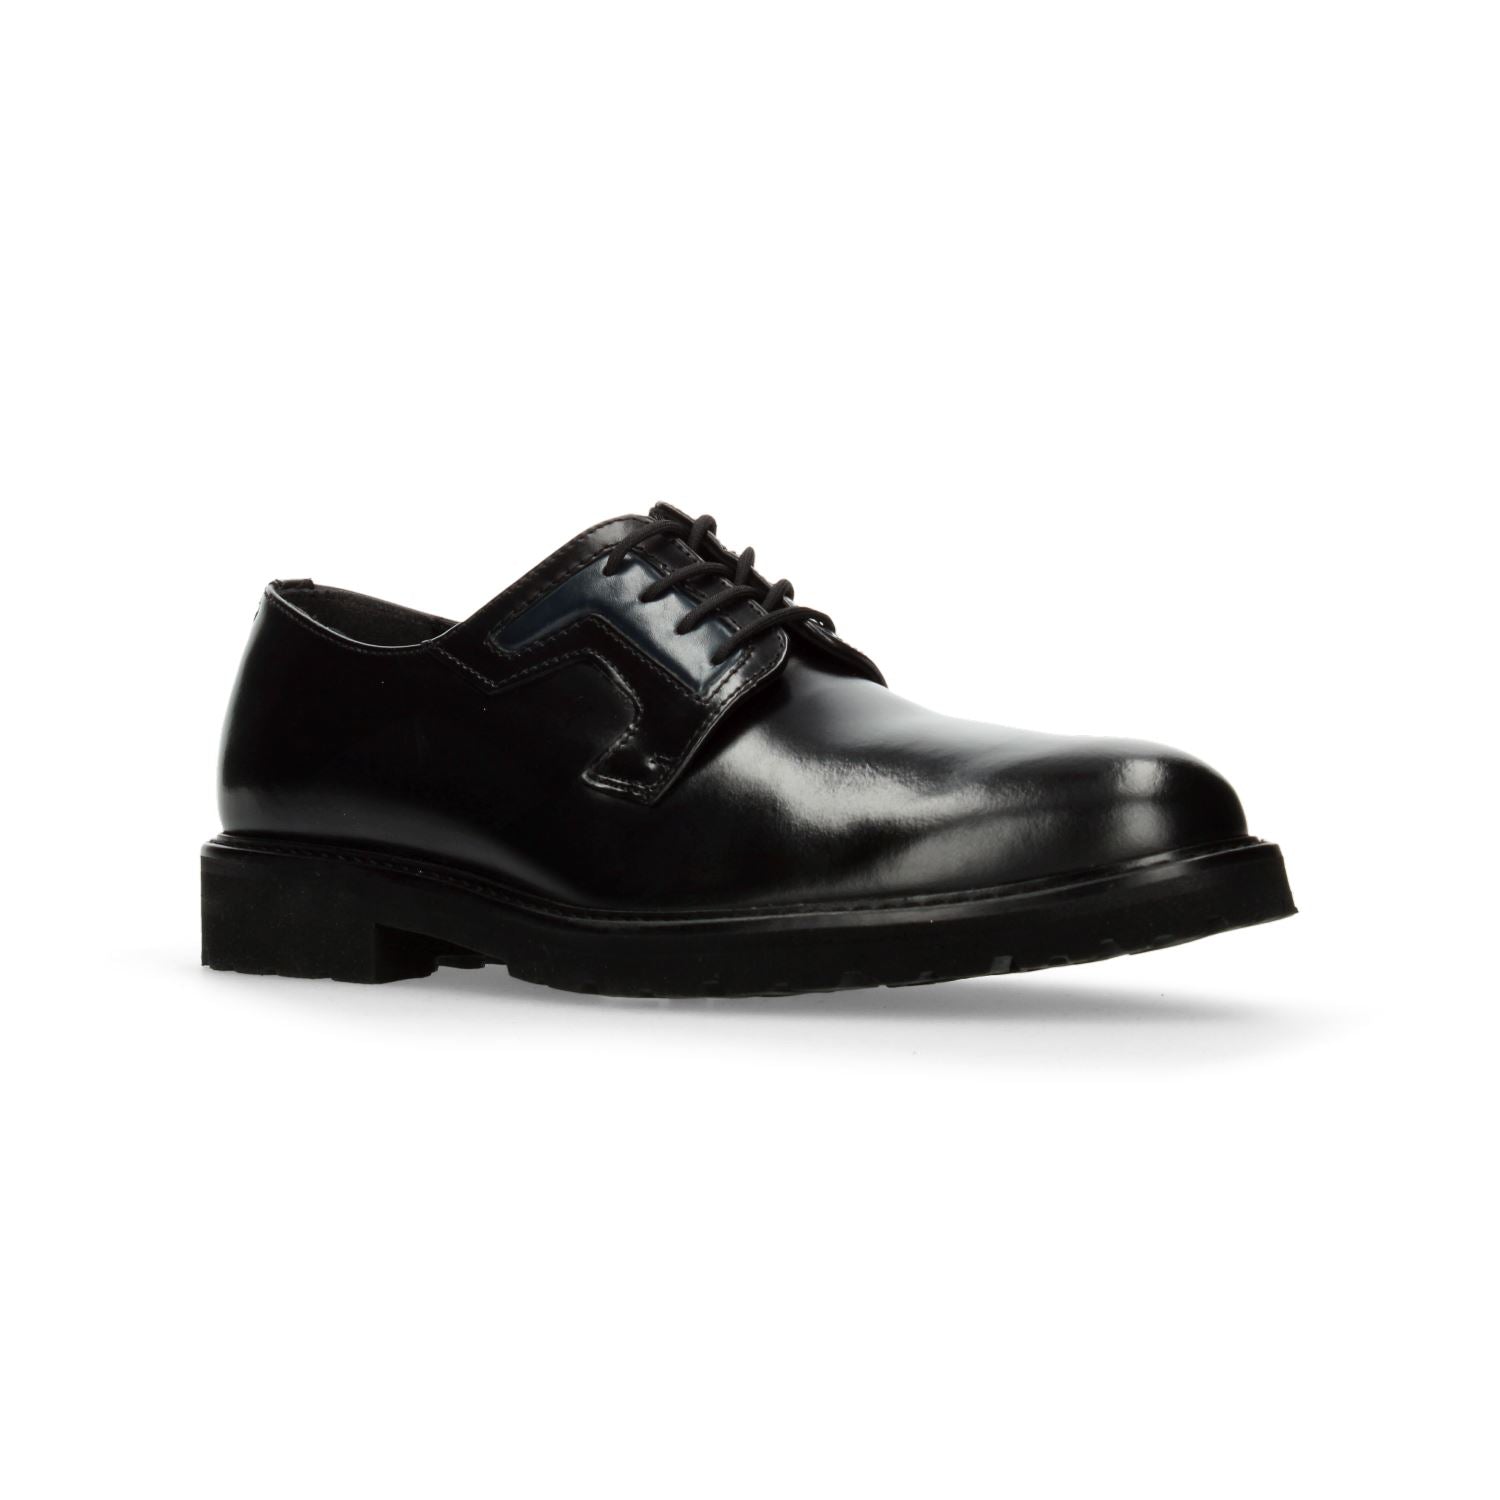 Zapato de Vestir Gino cherruti para Hombre 5005 Negro [GCH324] División_Calzado GINO CHERRUTI 26 Negro 